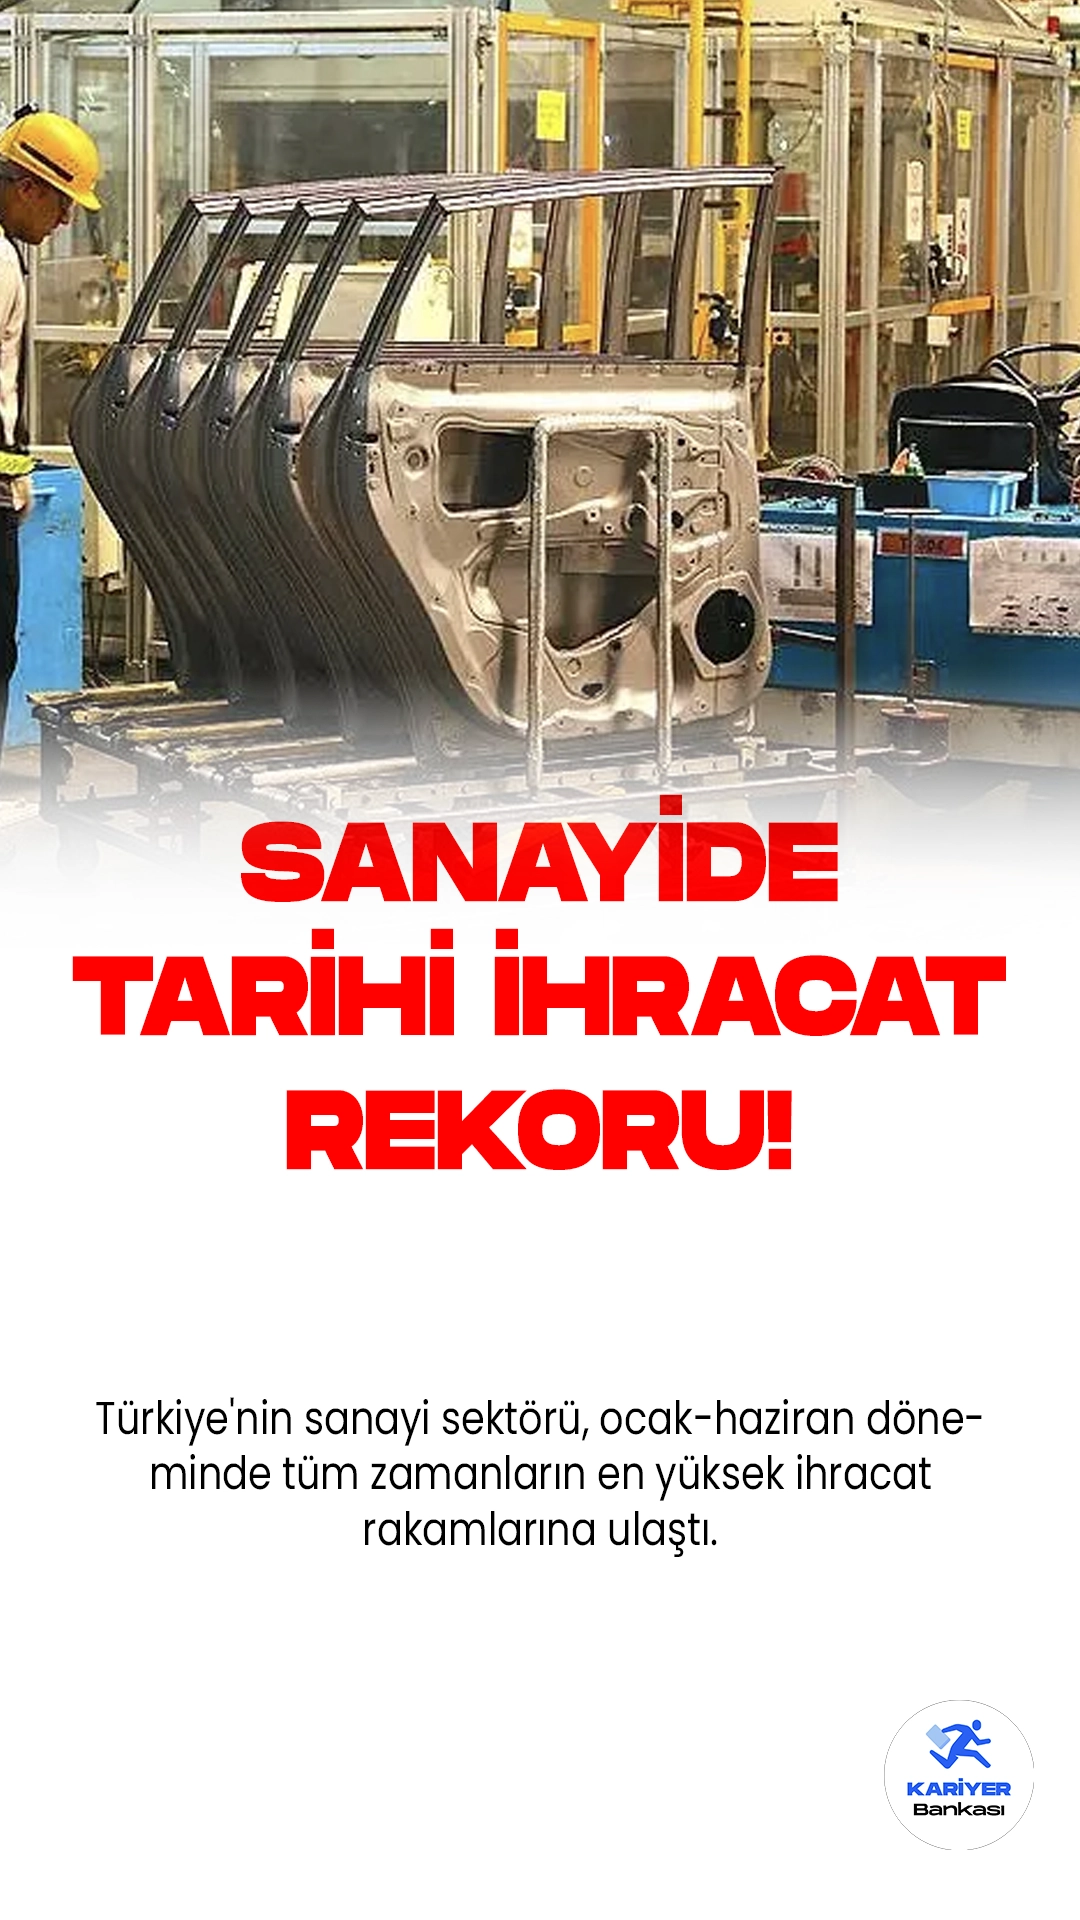 Sanayi Sektörü, Tarihi İhracat Rekoru Kırdı!Türkiye'nin sanayi sektörü, ocak-haziran döneminde tüm zamanların en yüksek ihracat rakamlarına ulaştı. Türkiye İhracatçılar Meclisi (TİM) verilerine göre, bu dönemde 17.3 milyar dolarlık ihracatla otomotiv endüstrisi başı çekti ve elektrik-elektronik sektörü 7.9 milyar dolarlık ihracatla ikinci sırada yer aldı.